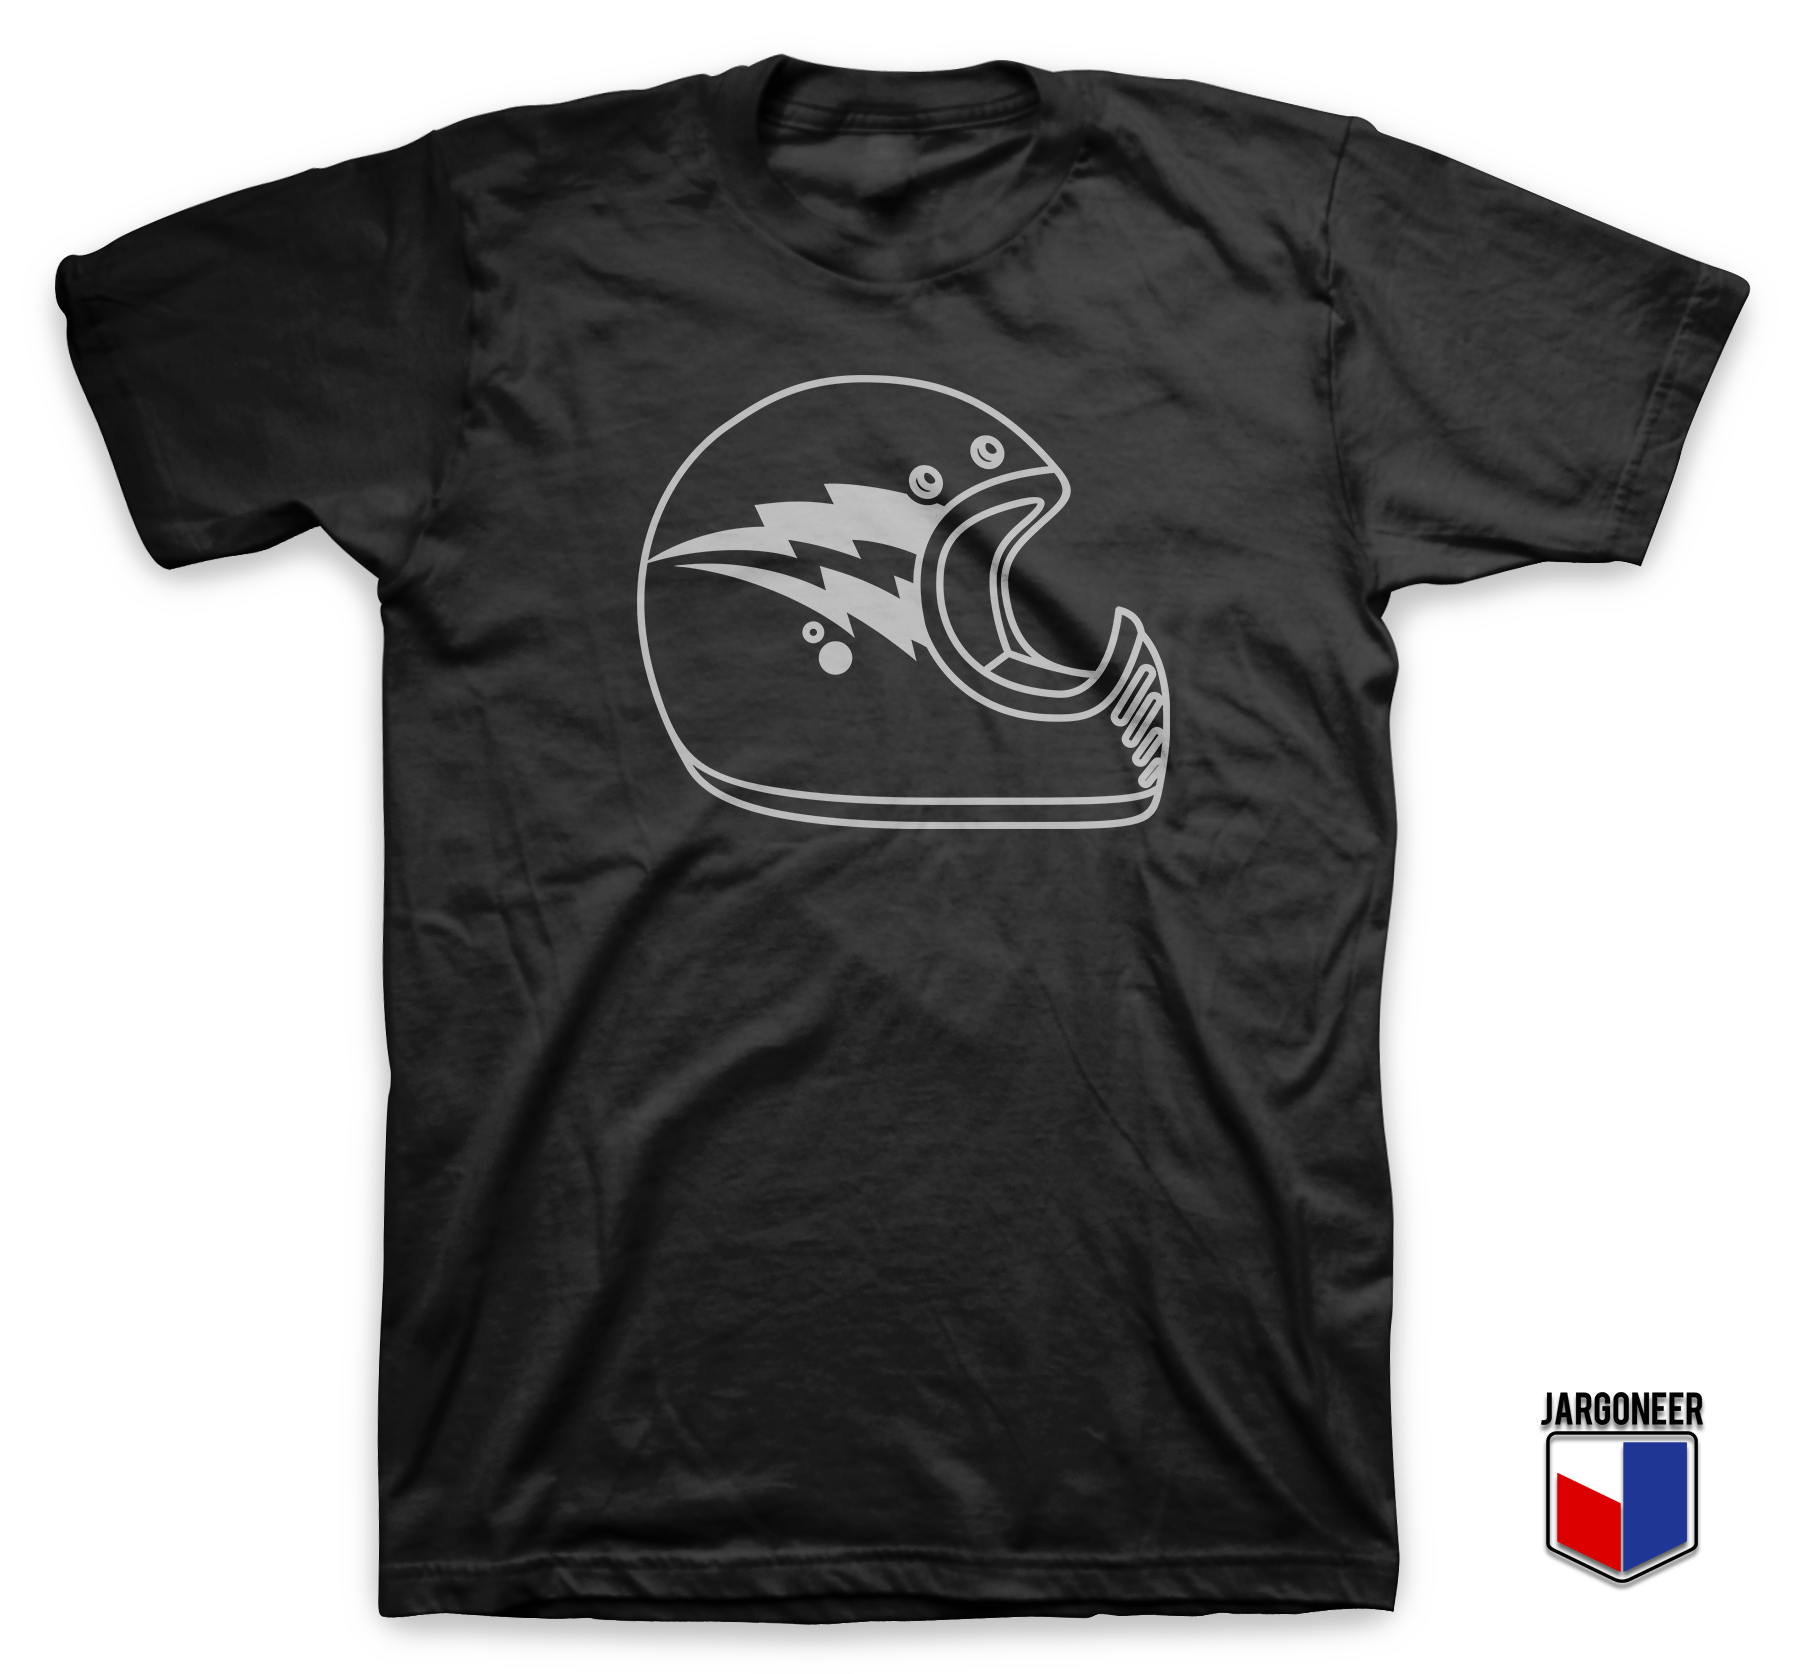 Classic Motocross Helmet Black T Shirt - Shop Unique Graphic Cool Shirt Designs